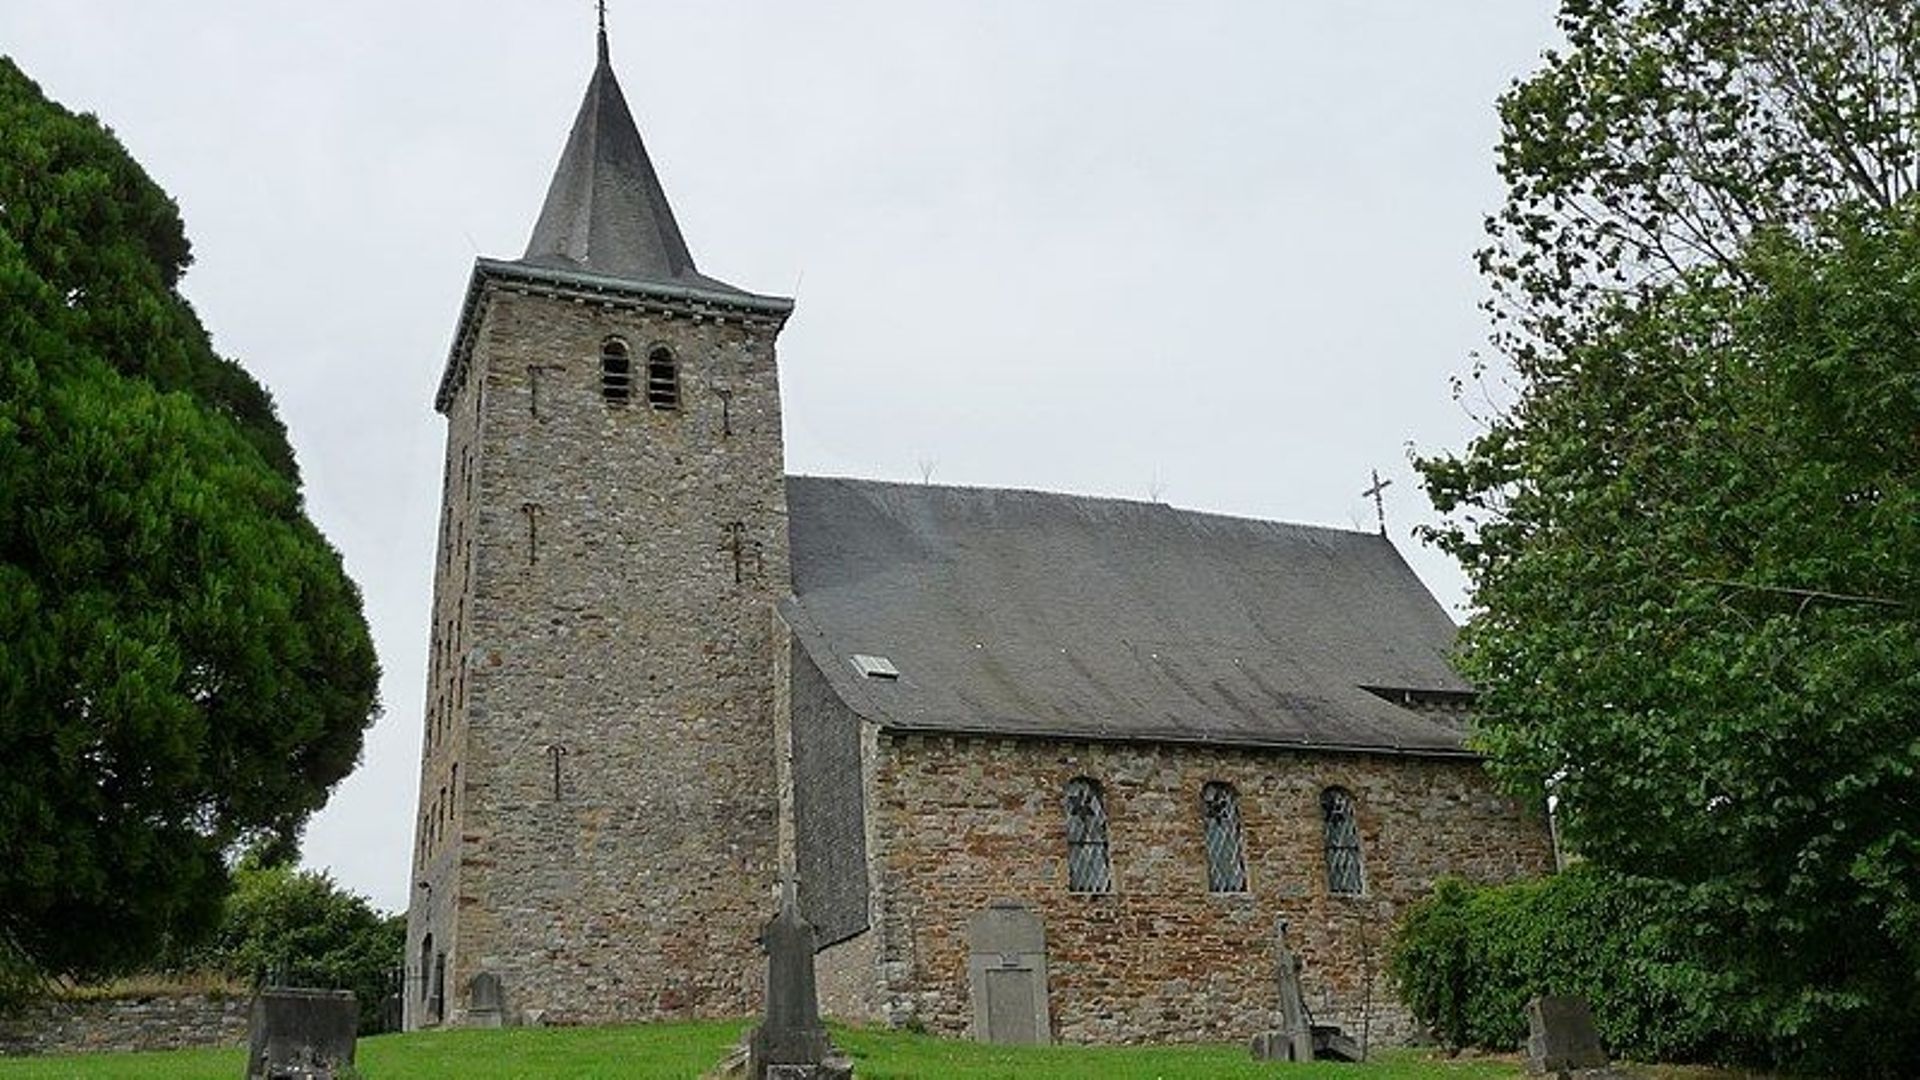 Strée-lez-Huy, commune de Modave (Belgique) . Église Saint-Nicolas (XIIe siècle)